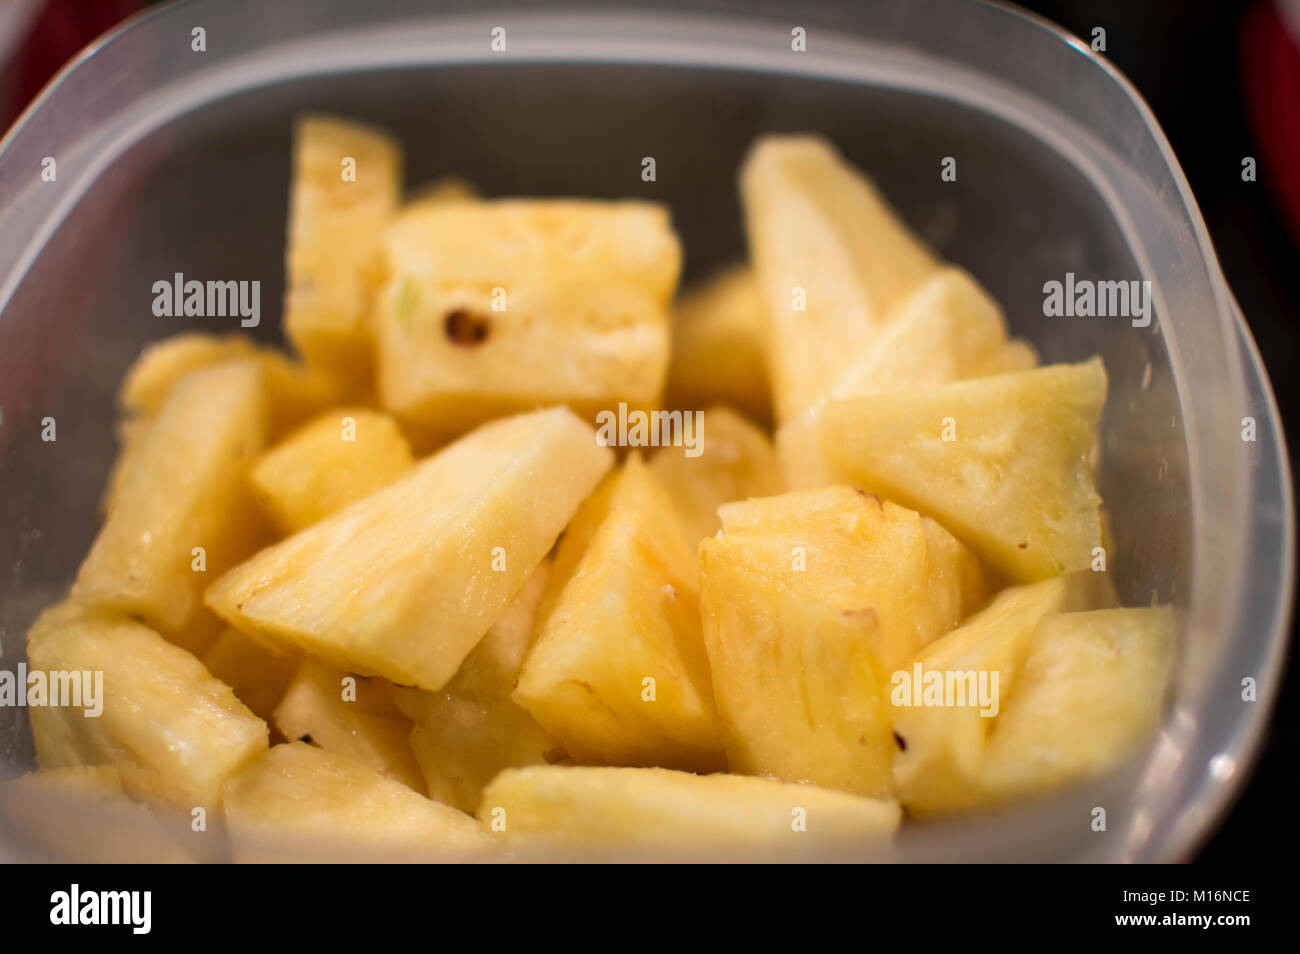 Les tranches d'ananas dans un contenant de plastique Banque D'Images